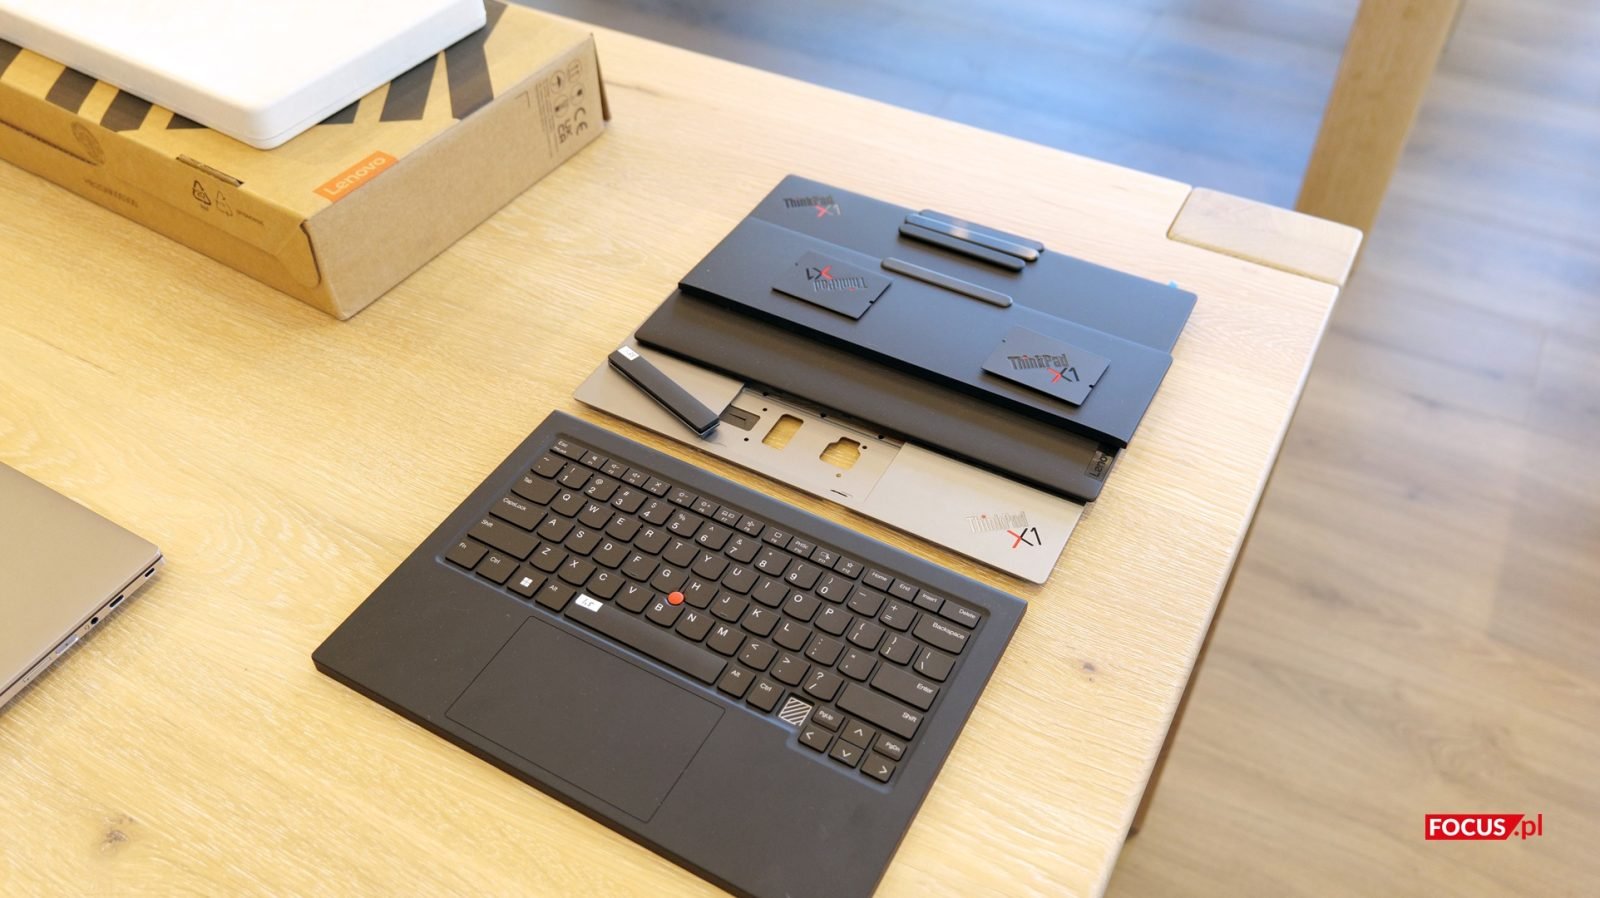 Design serii ThinkPad od dekad jest dość charakterystyczny